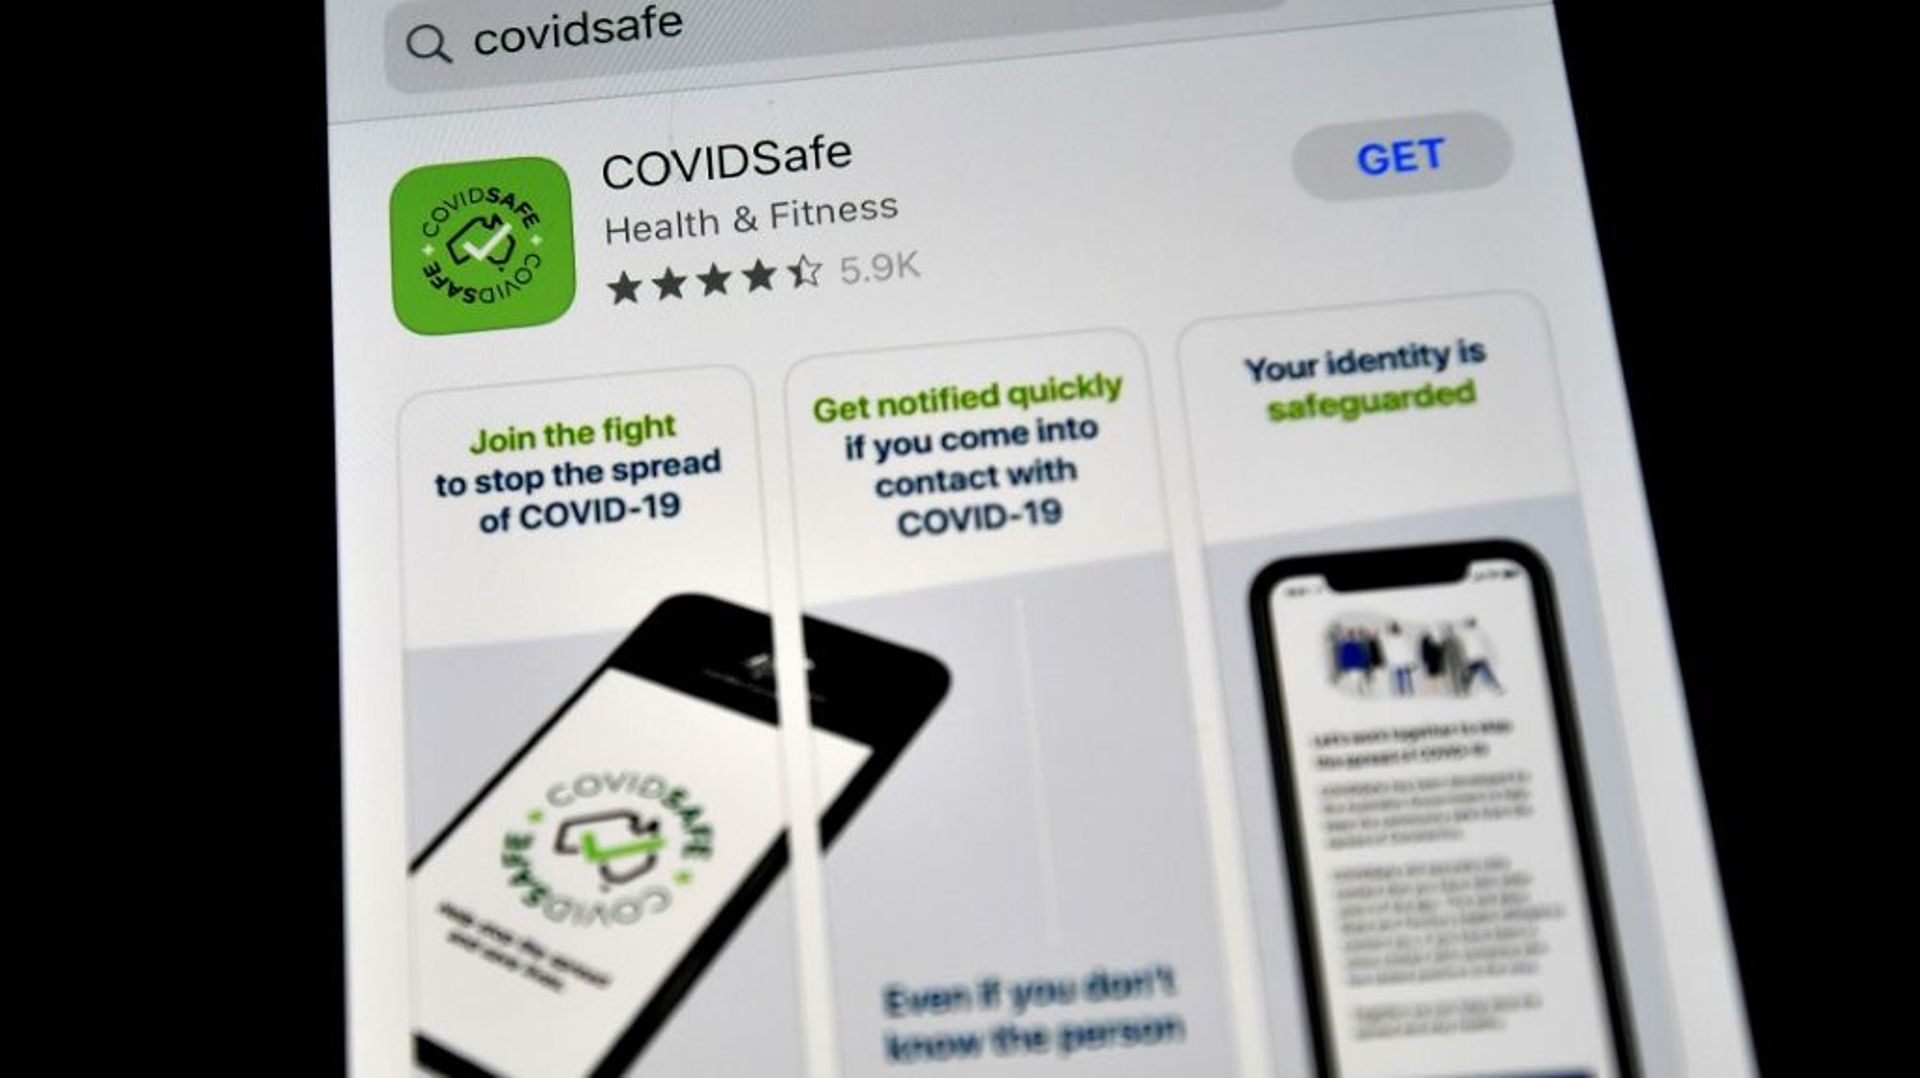 L'application "COVIDSafe" pour smartphone destinée à tracer les contacts avec des personnes diagnostiquées positives au coronavirus, le 27 avril 2020 à Sydney, en Australie